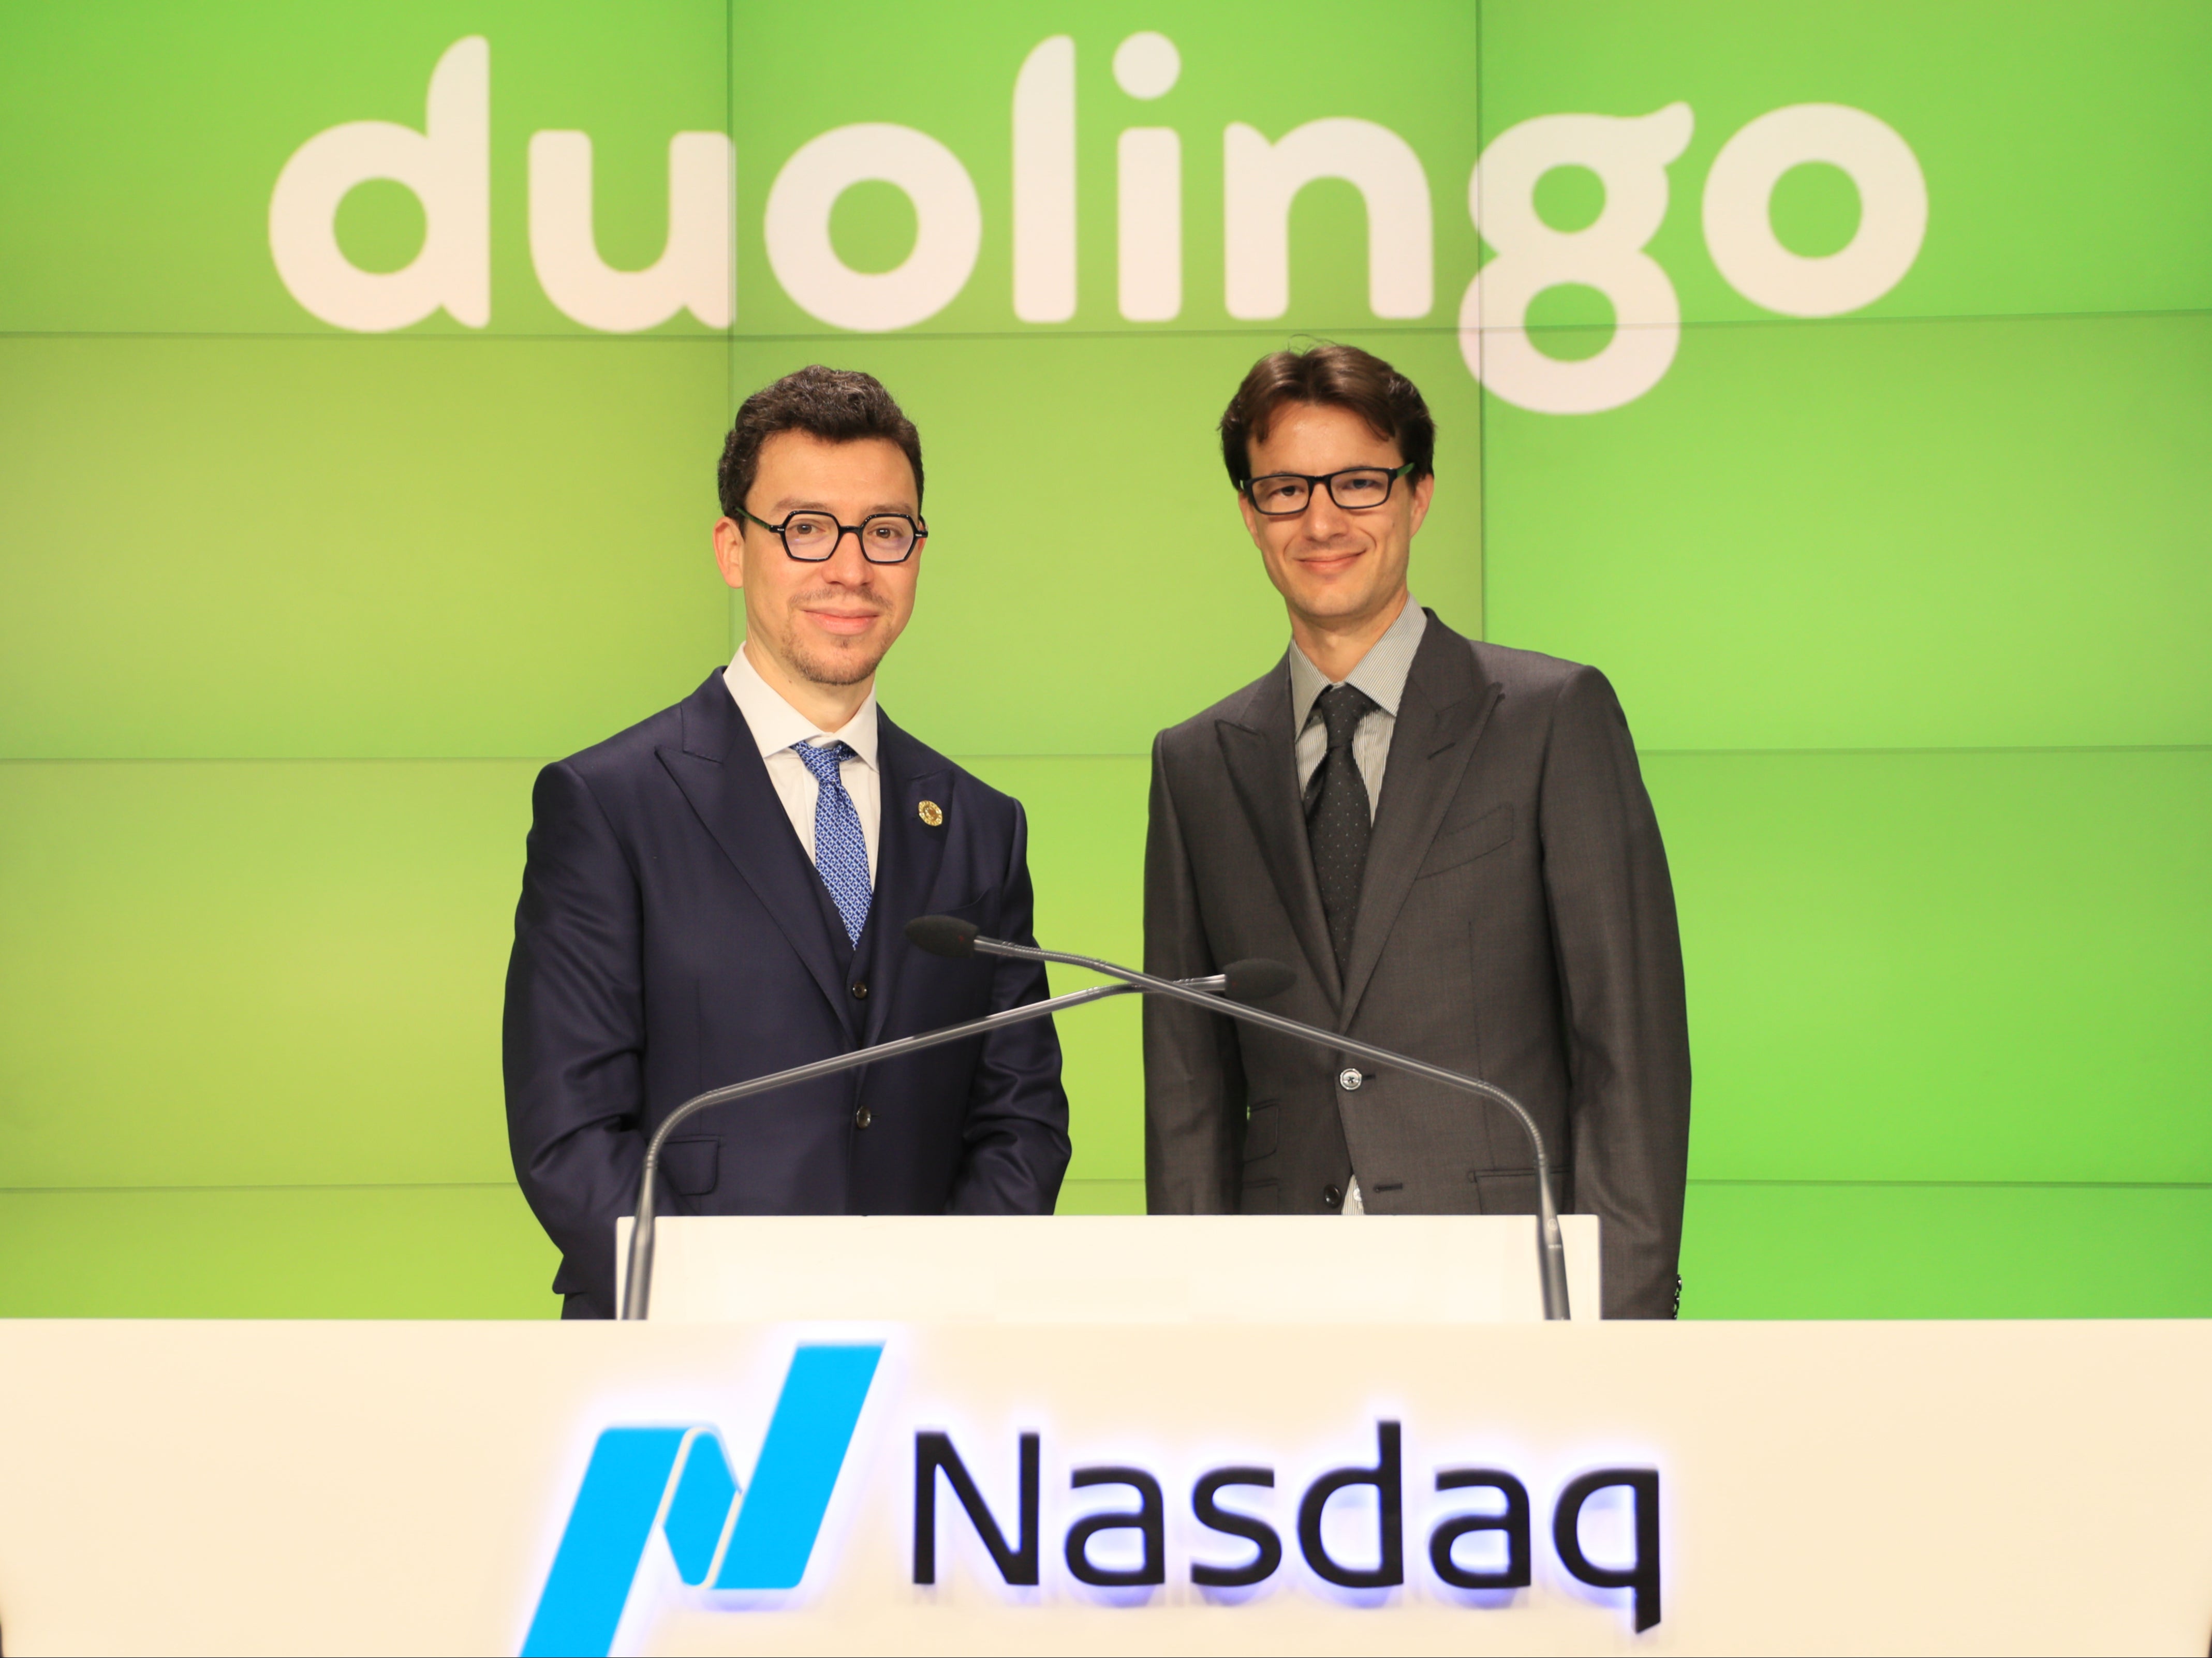 Duolingo’s Luis von Ahn (left) and Severin Hacker